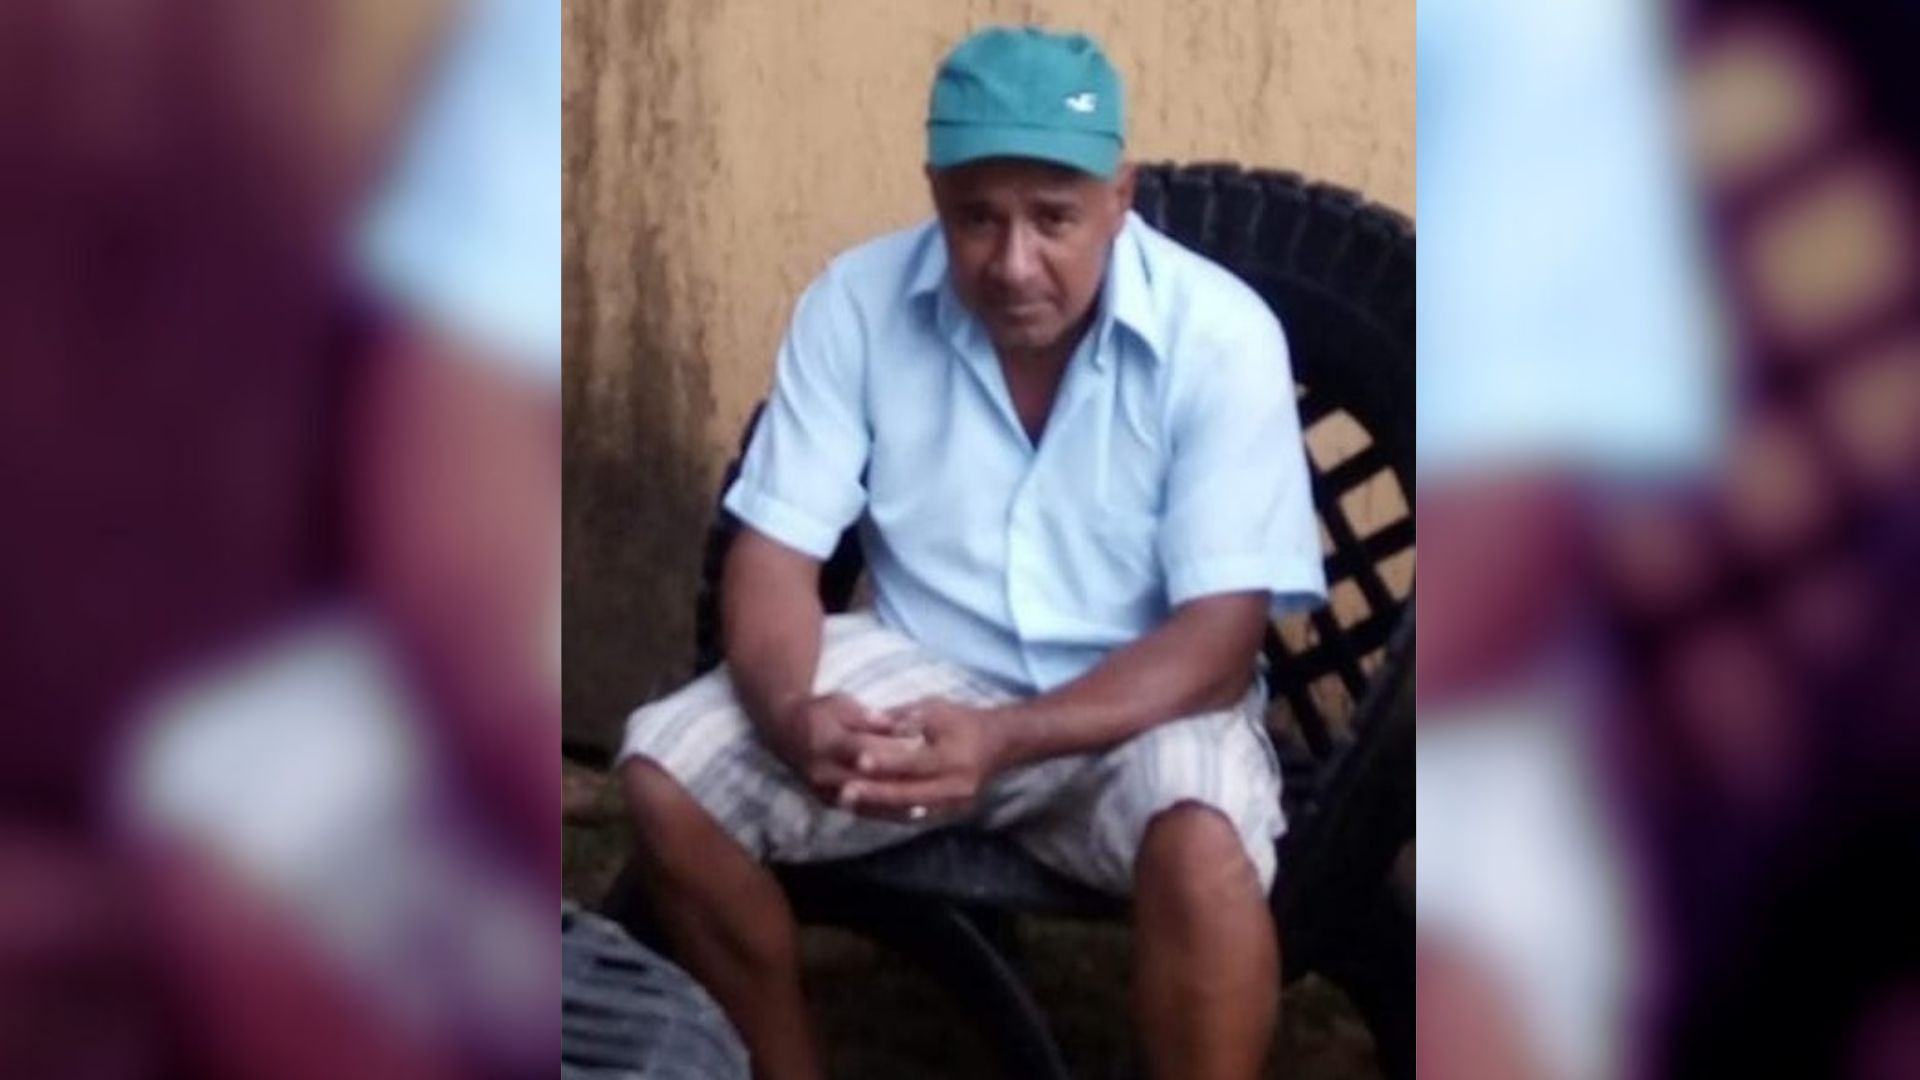 Nelson Lima das Neves, de 59 anos, está desaparecido desde o dia 22 de março após sair da casa onde reside com a esposa e as filhas no bairro São Marcos